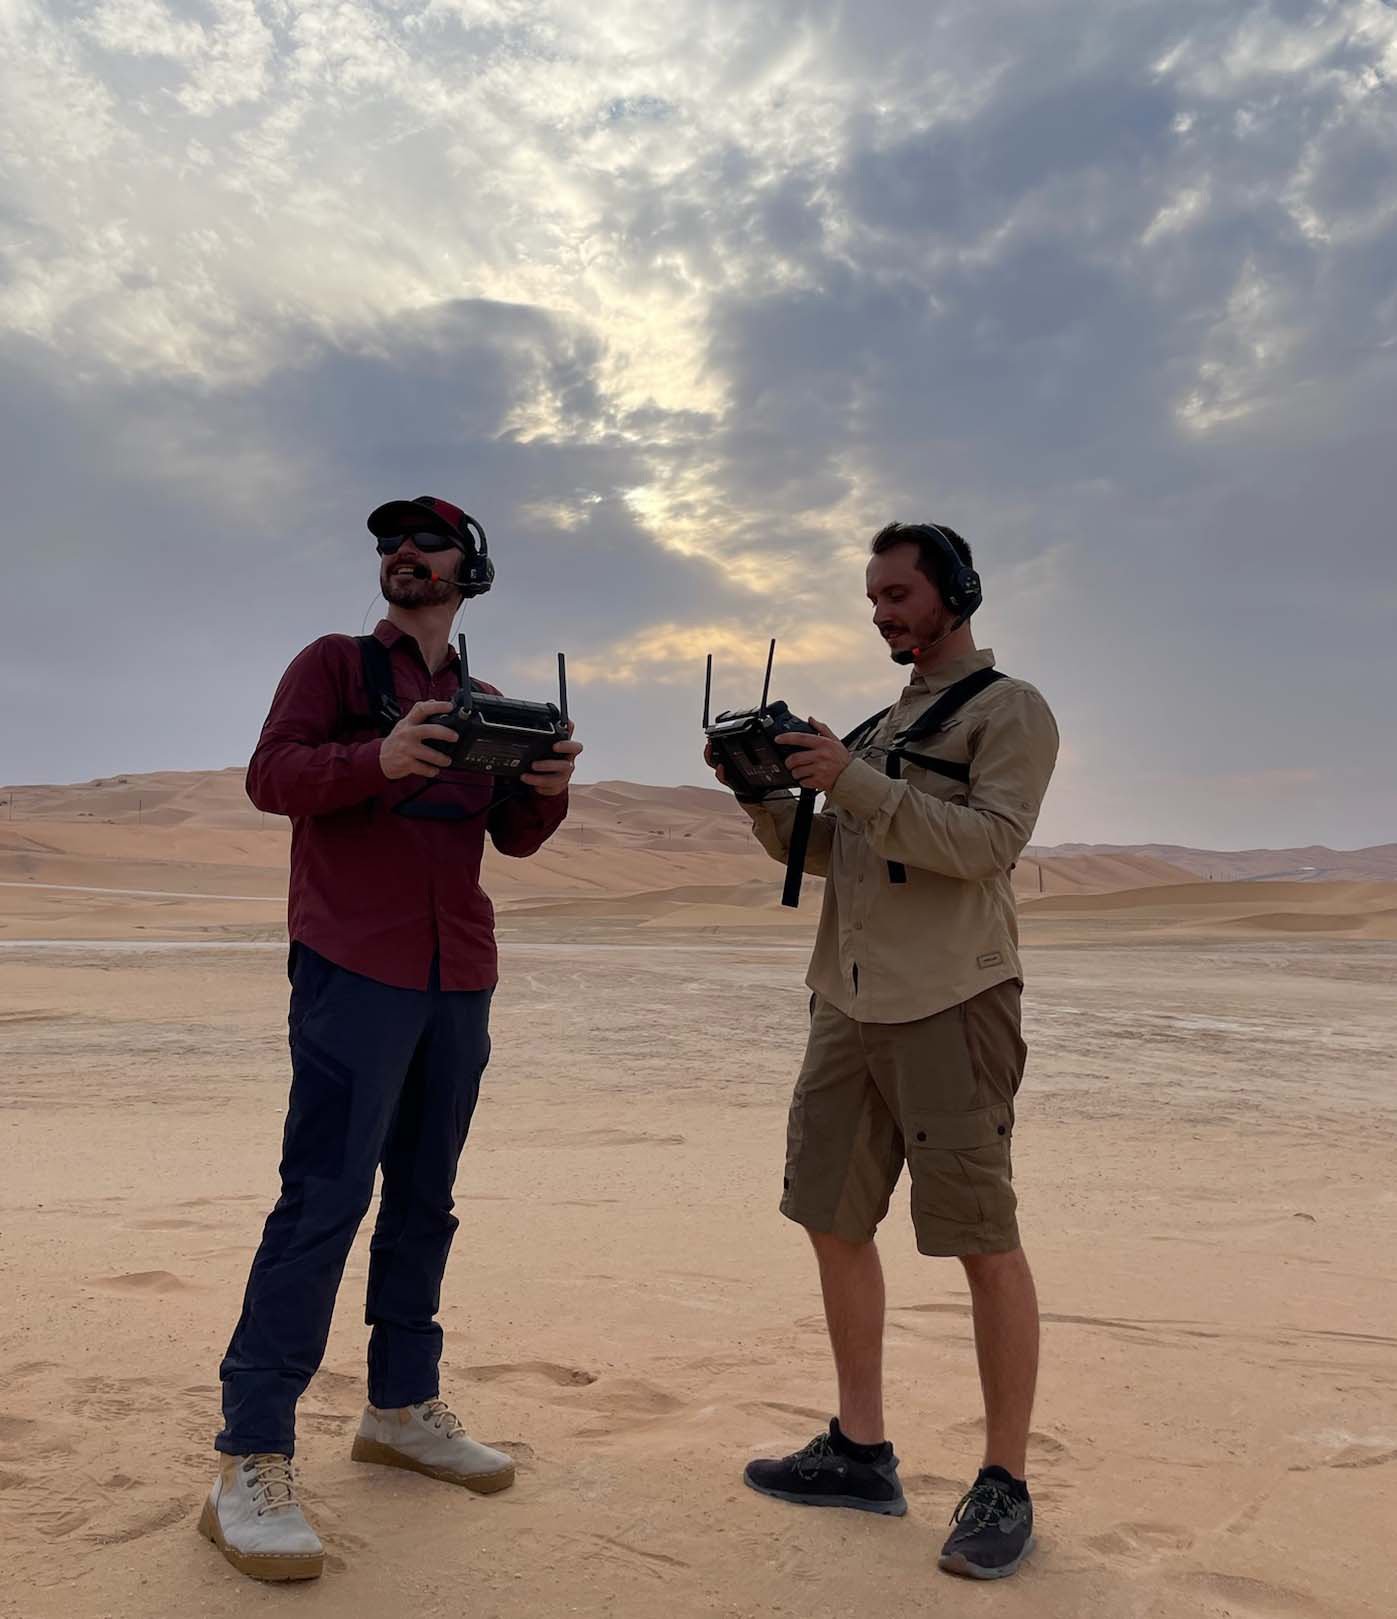  Dos operadores de drones con paneles de control supervisan un rodaje en el desierto, coordinando las operaciones de filmación aérea. 